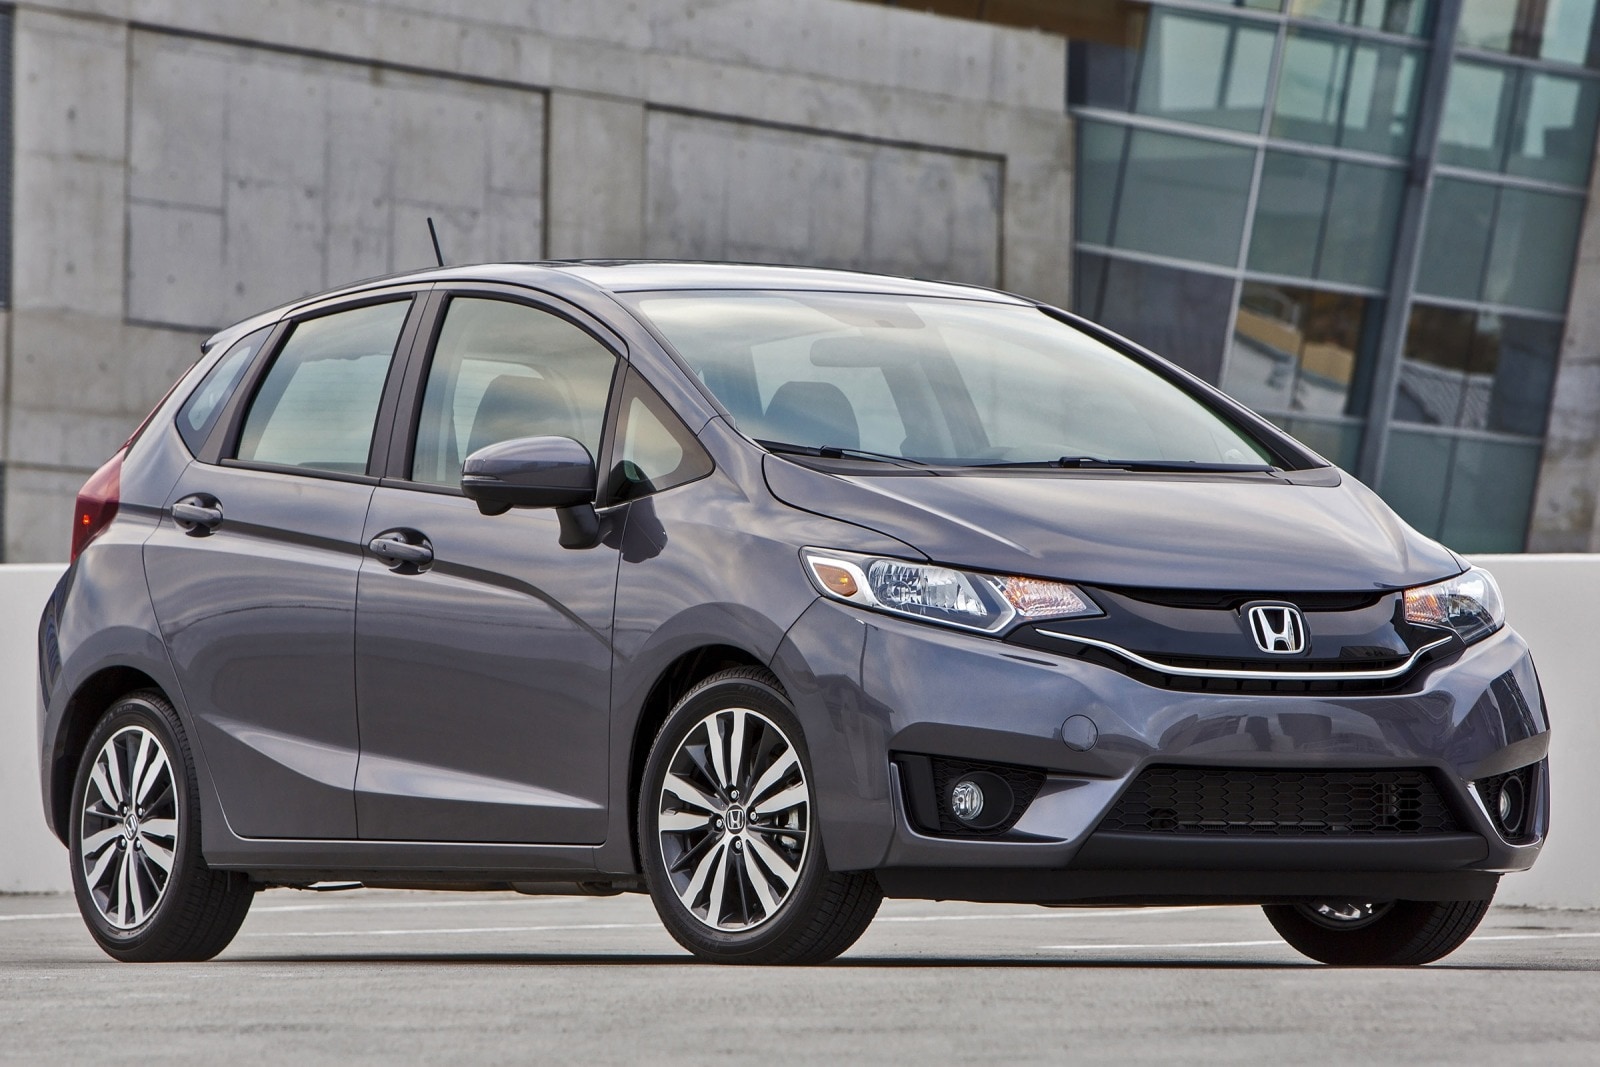 2015 Honda Fit Review & Ratings | Edmunds